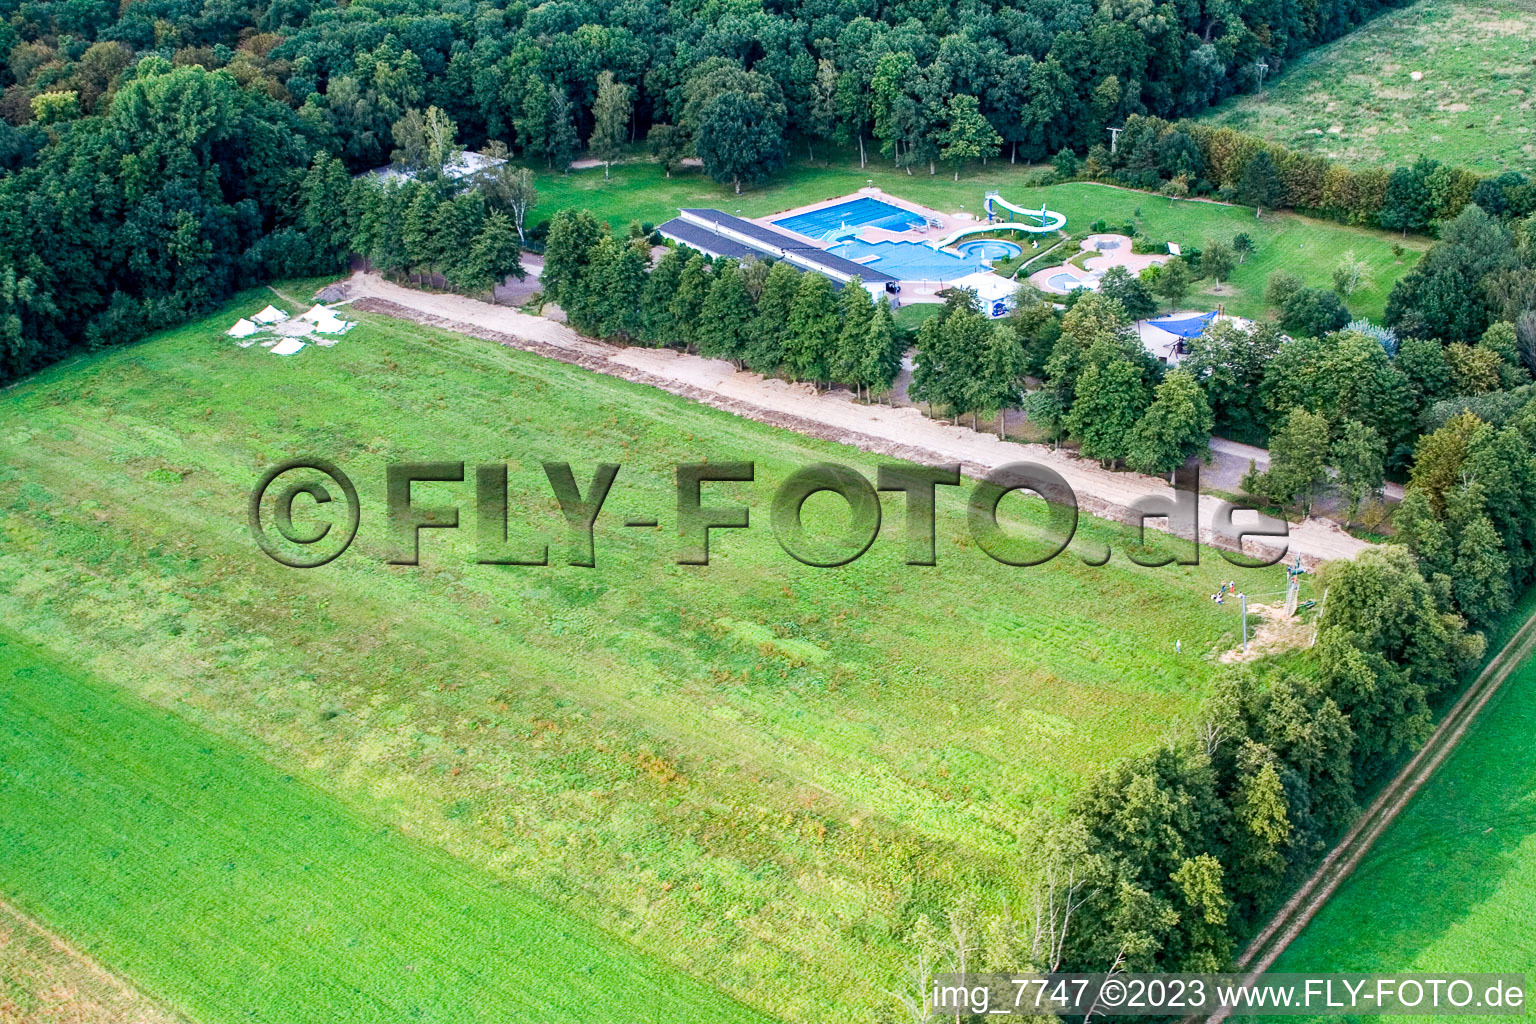 Vue aérienne de Tyrolienne géante, camp Fun-Forest à Kandel dans le département Rhénanie-Palatinat, Allemagne